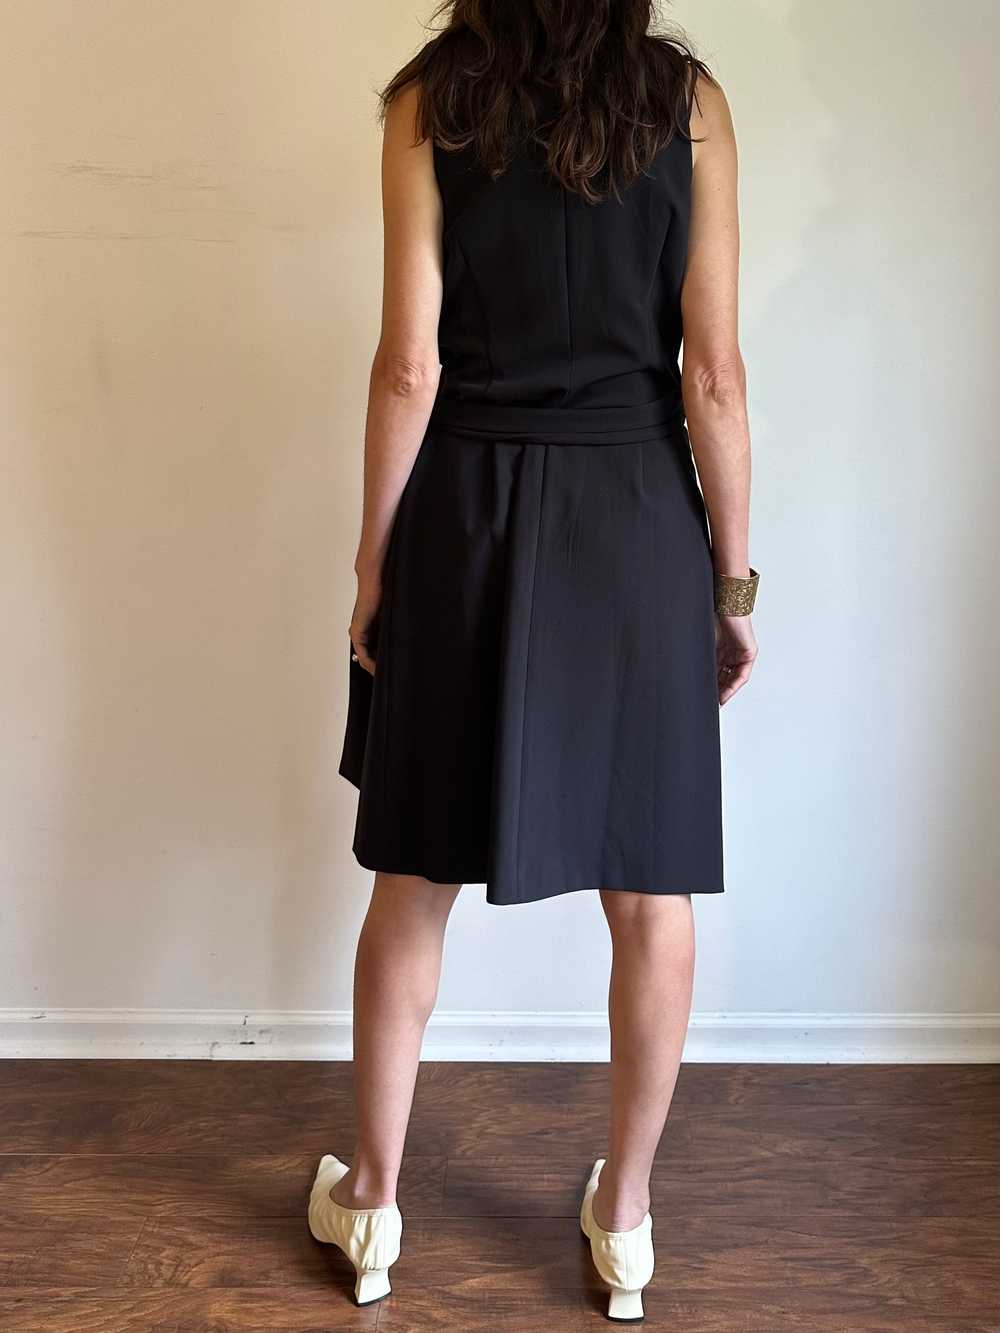 Donna Karen Black Wrap Halter Dress - image 3